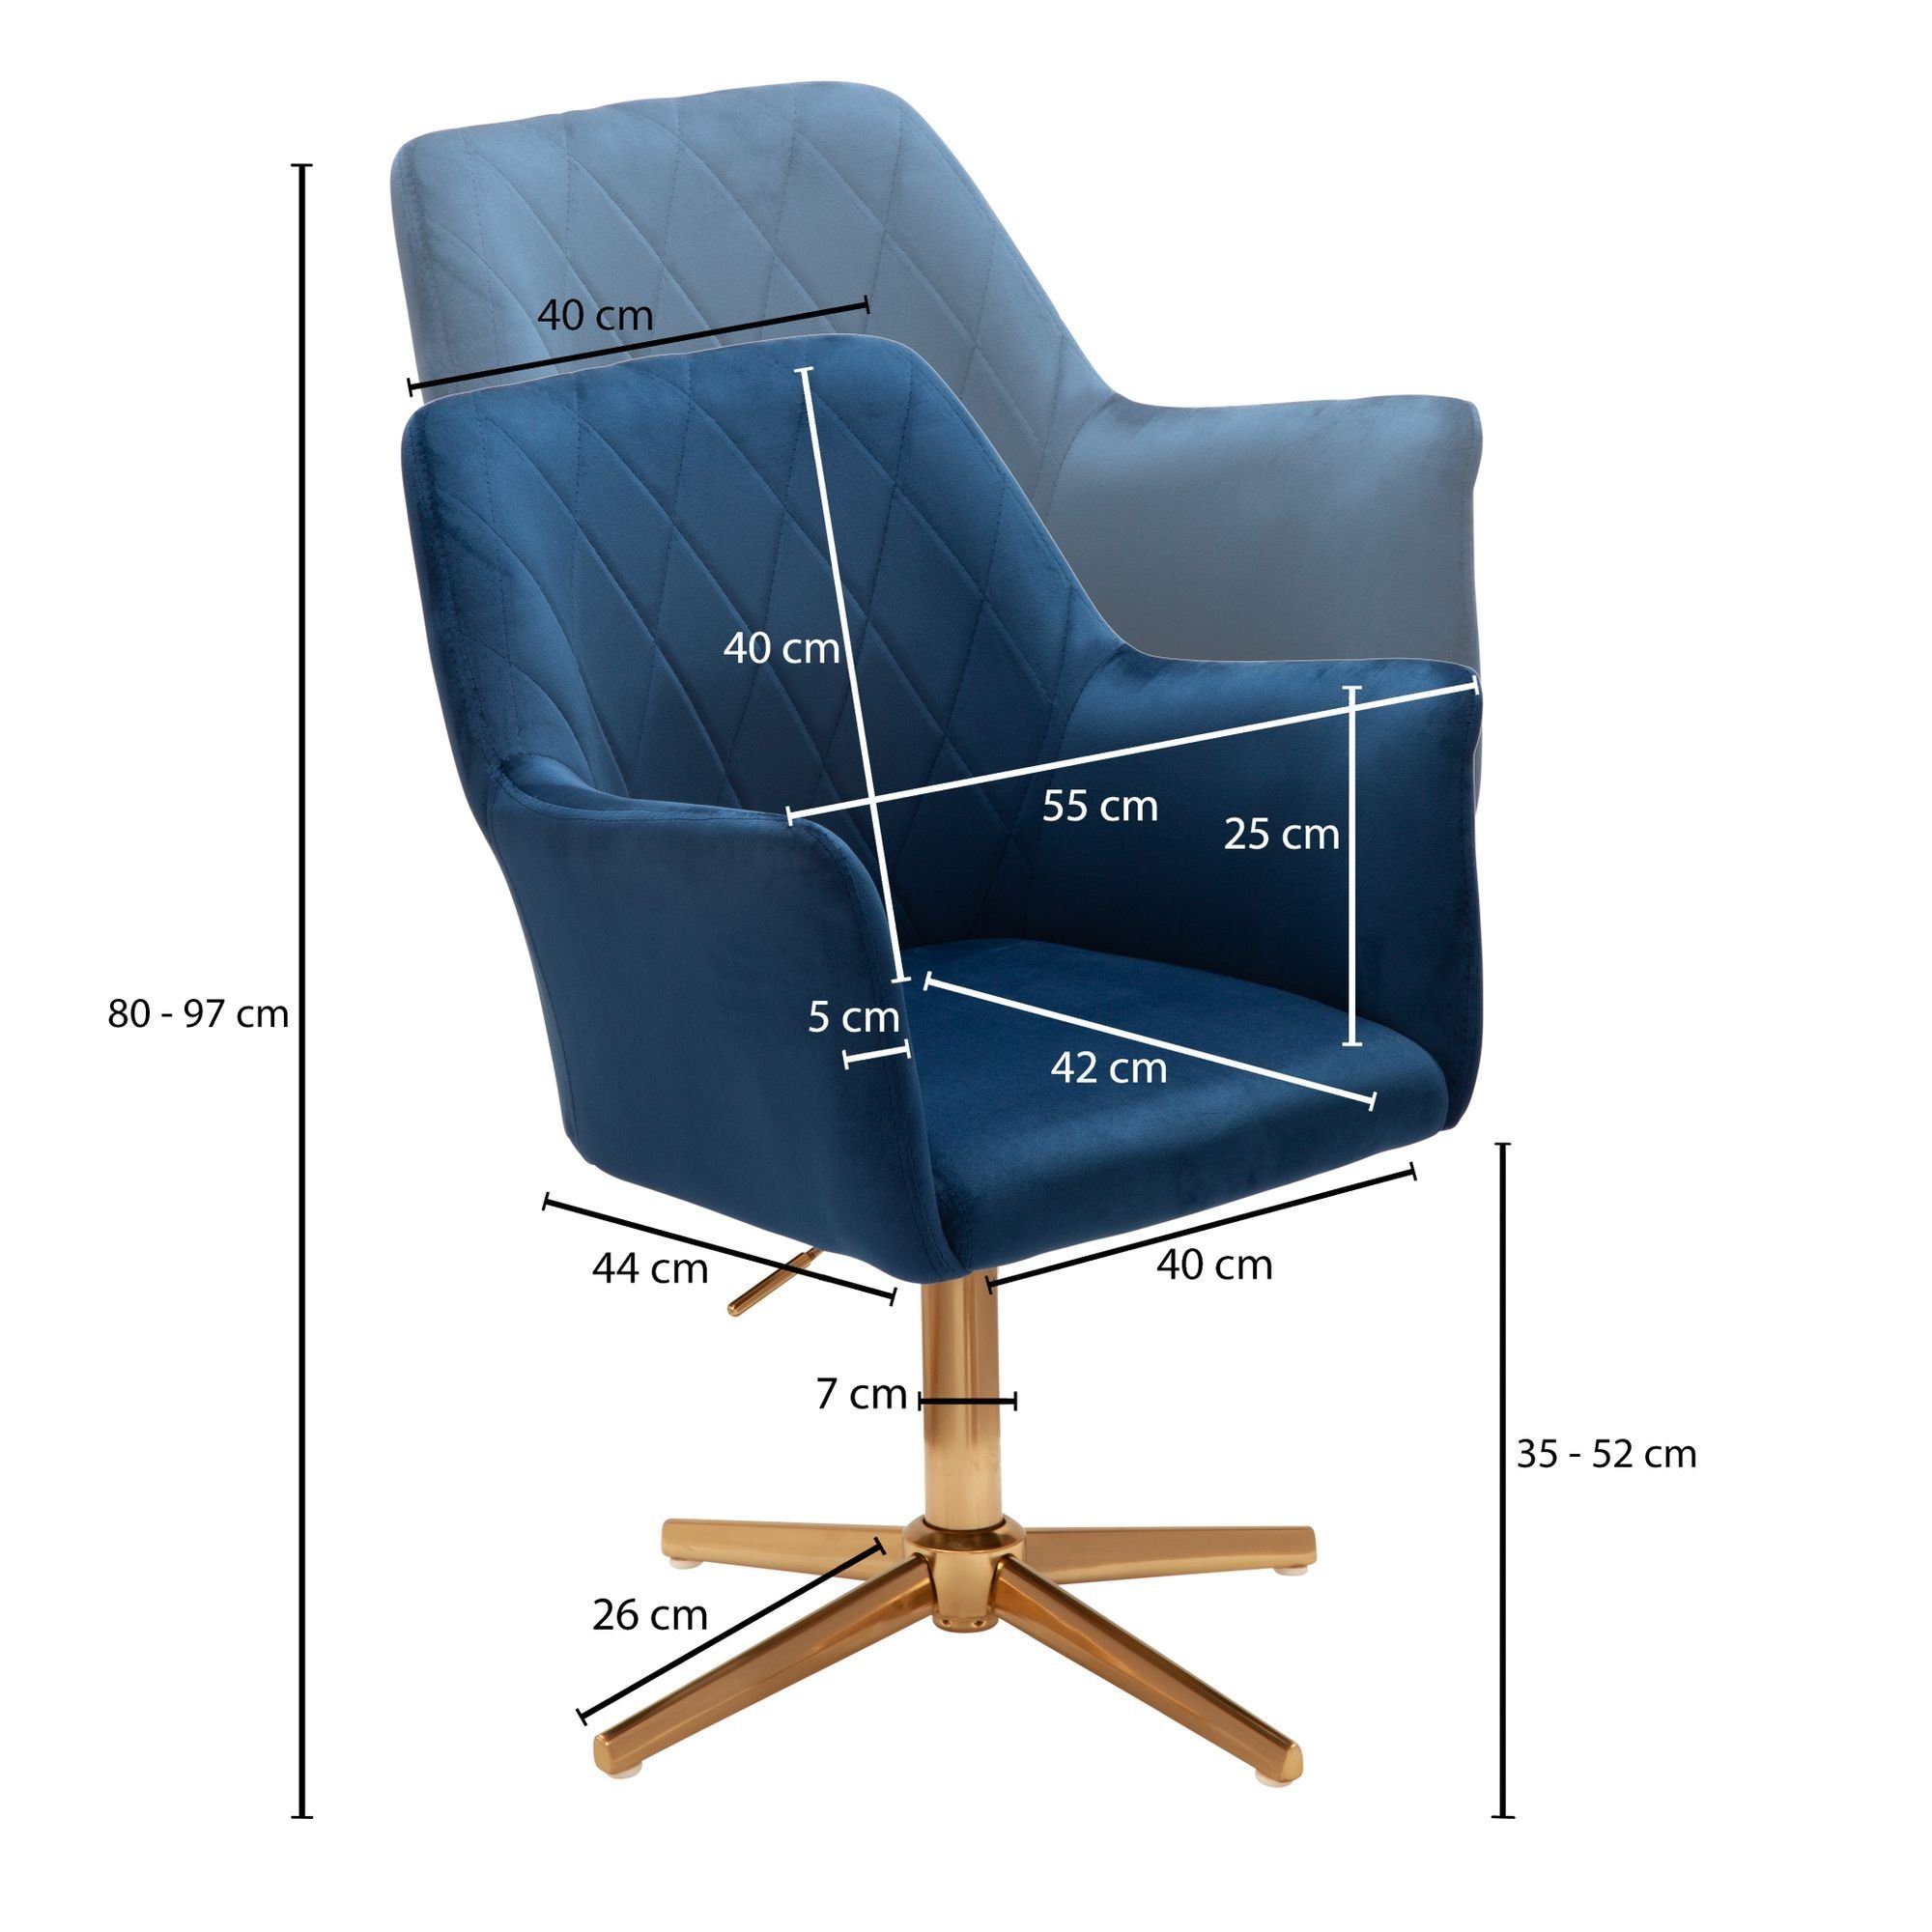 FINEBUY Drehstuhl Design Blau mit Höhenverstellbar, Blau Lehne), kg 120 FB24212 | Schalenstuhl Drehbar Blau, Drehbar Schreibtischstuhl (Samt